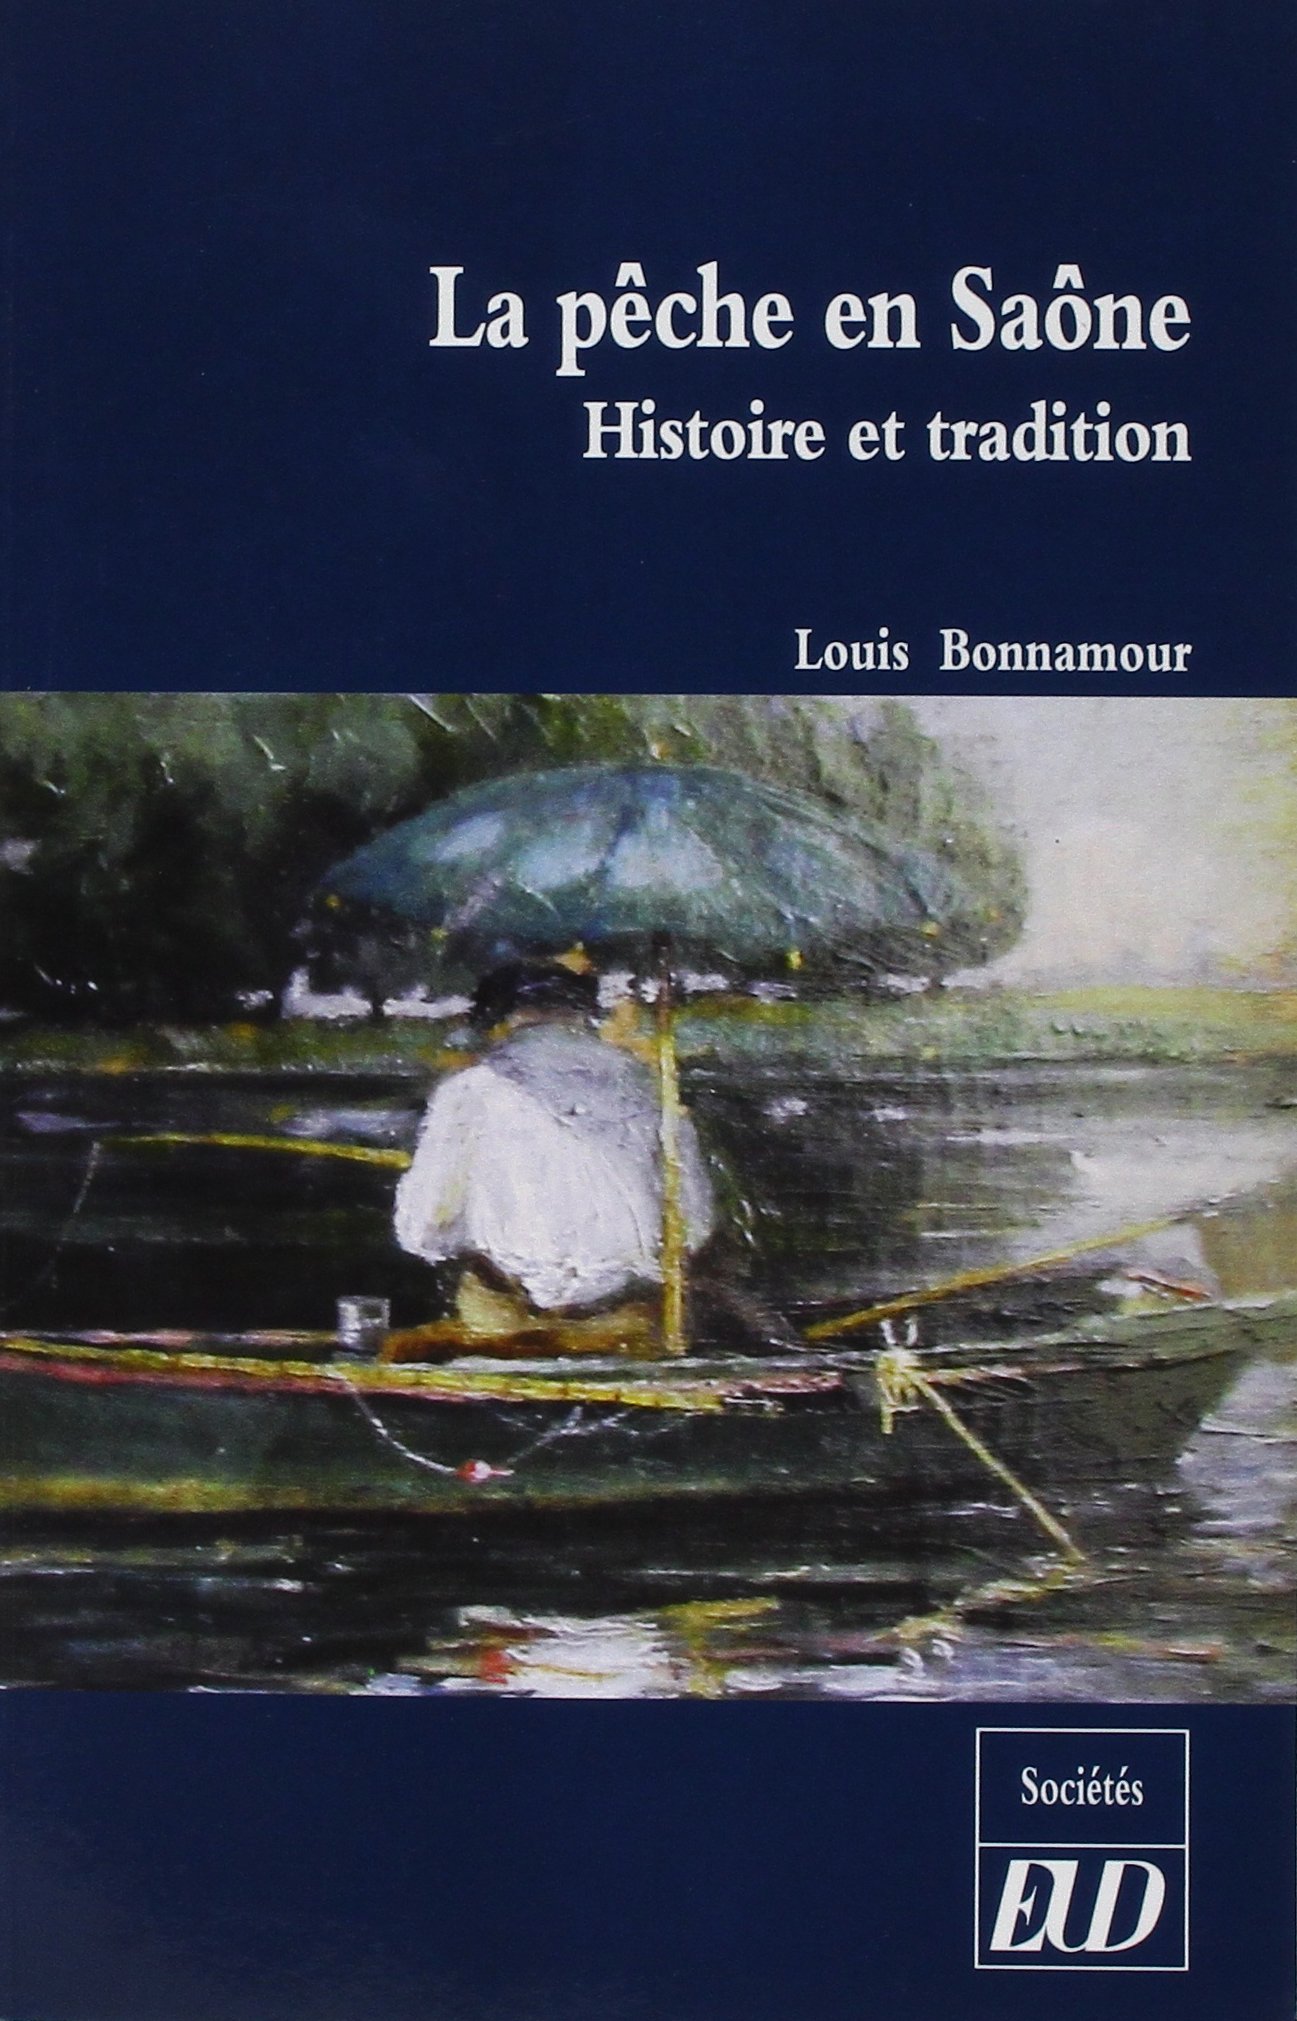 La pêche en Saône. Histoire et tradition, 2017, 266 p.